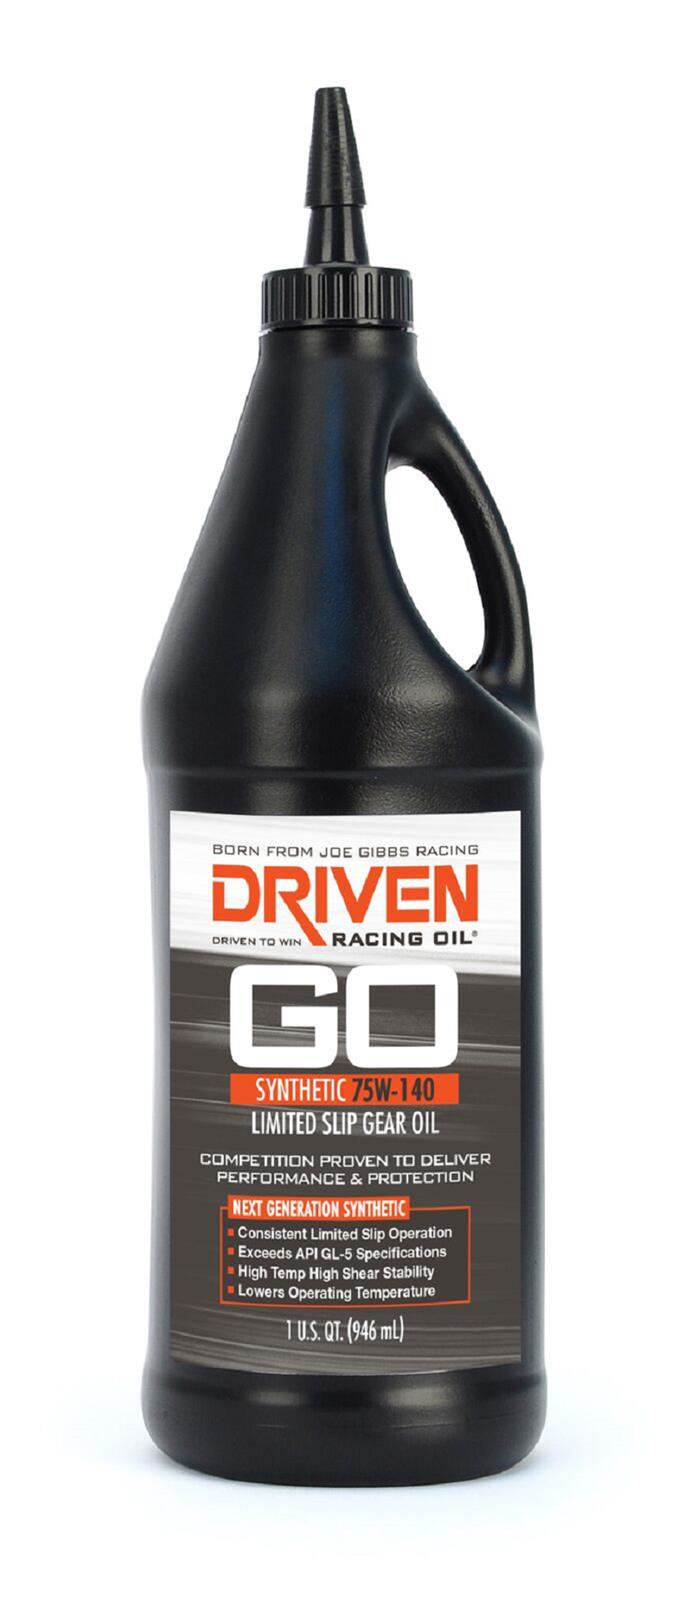 Driven Racing Oil 04430 Limited Slip 75W-140 Synthetic Gear Oil (1 qt. bottle)